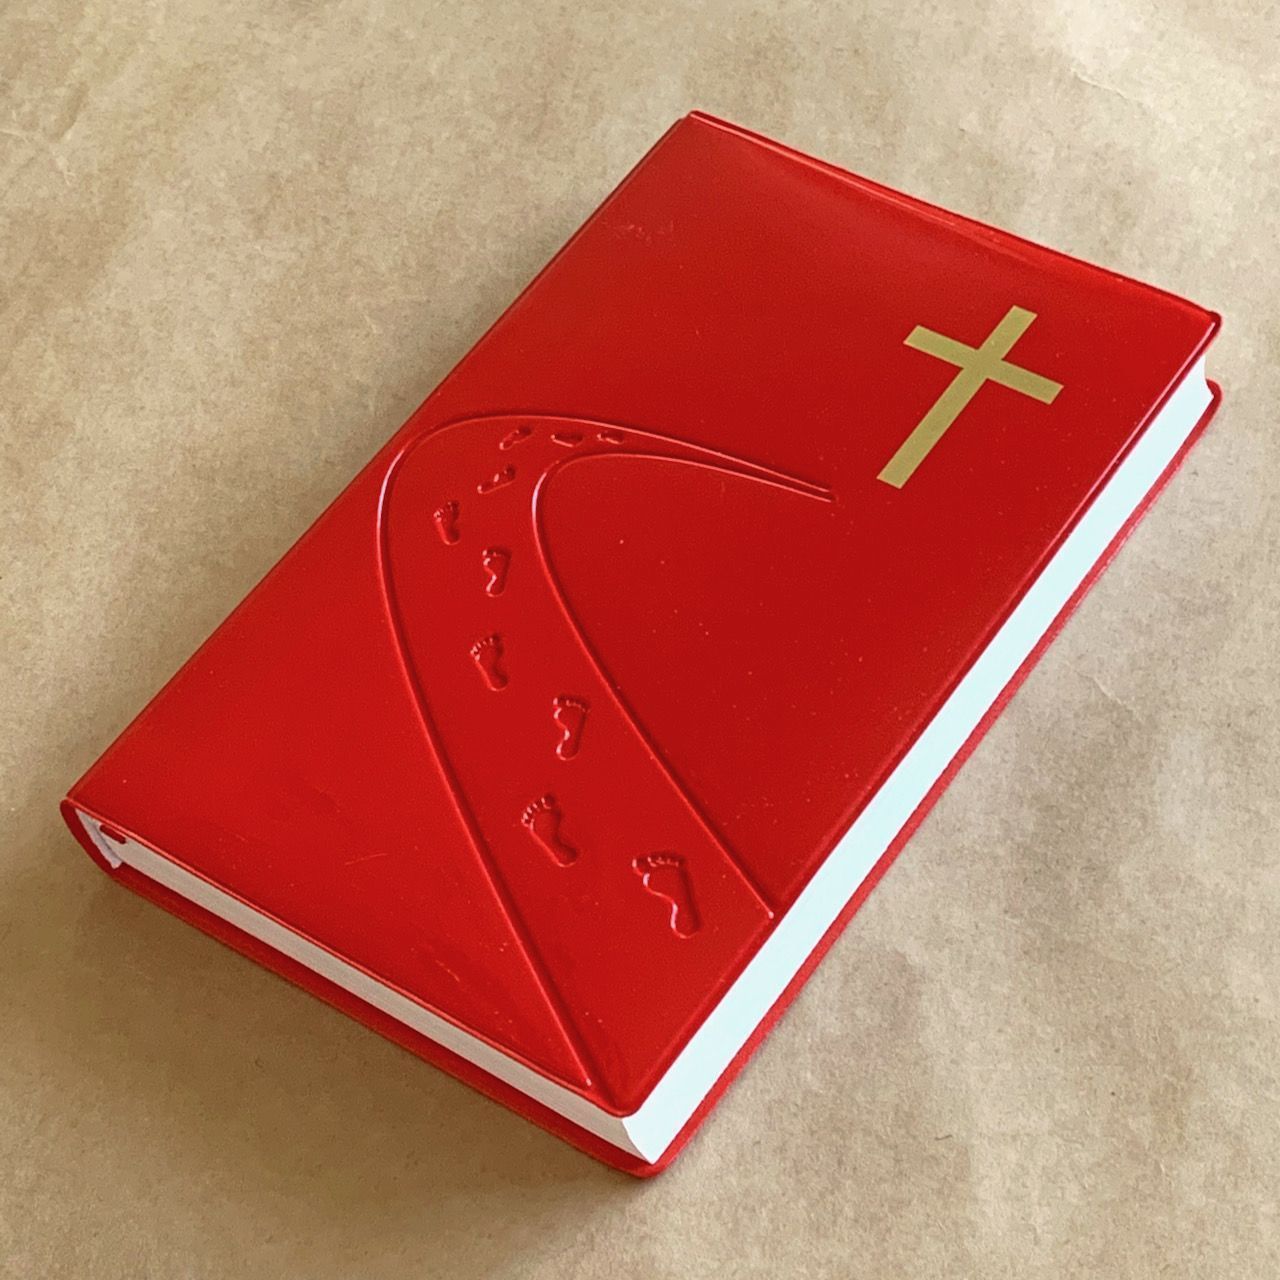 Библия 055 код C5 7115 переплет из искусственной кожи, цвет красный лак, дизайн "дорога ко Кресту", средний формат, 140*213 мм, параллельные места по центру страницы, крупный шрифт